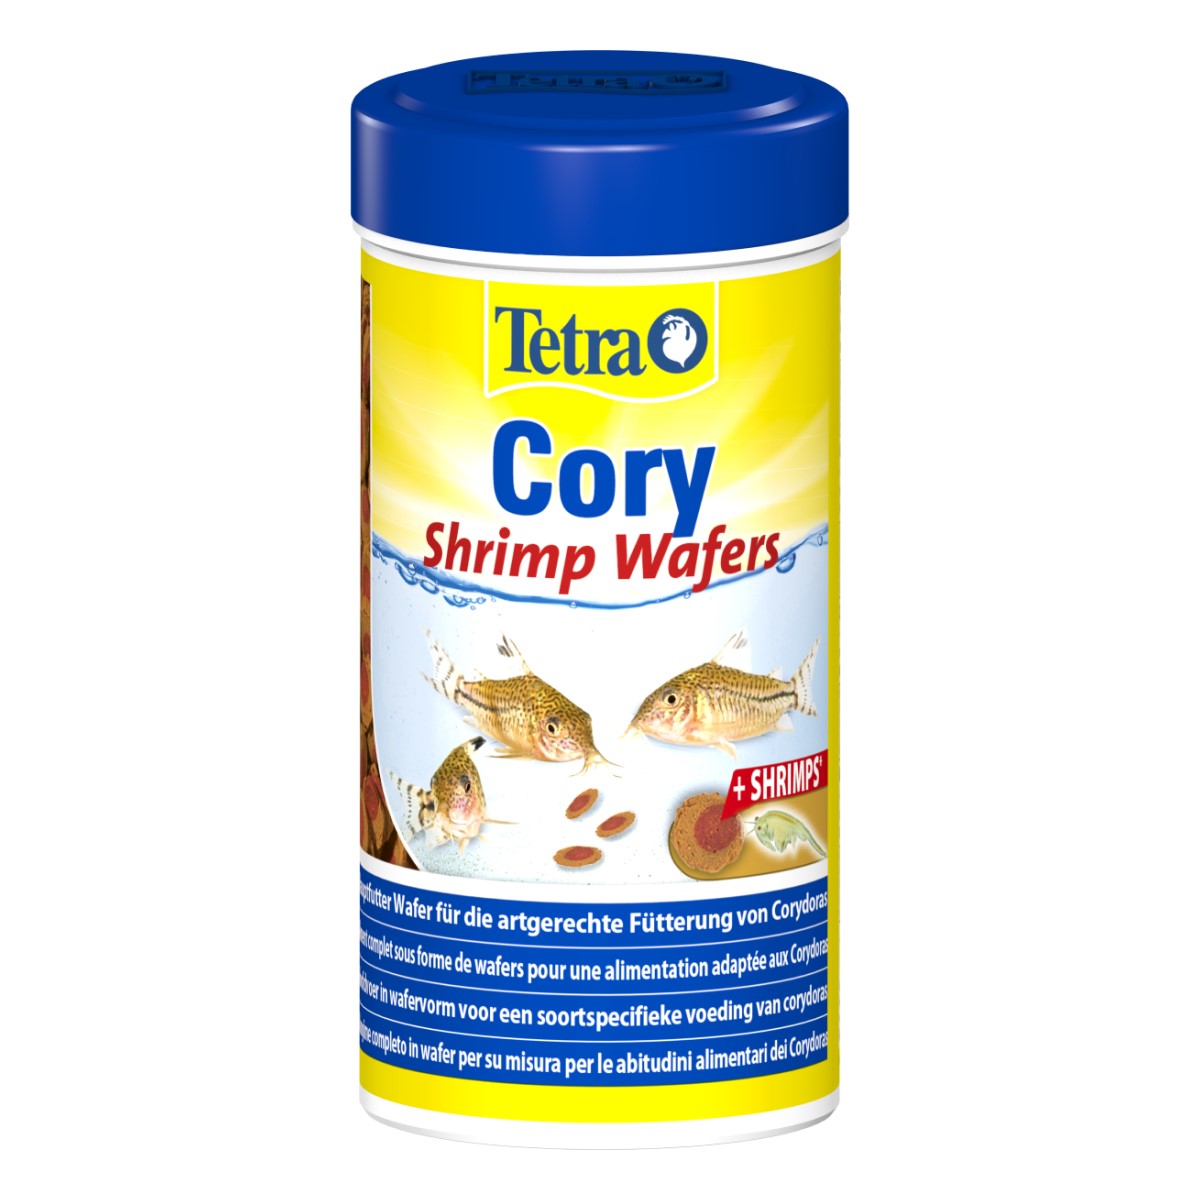 Cory Shrimp Wafers